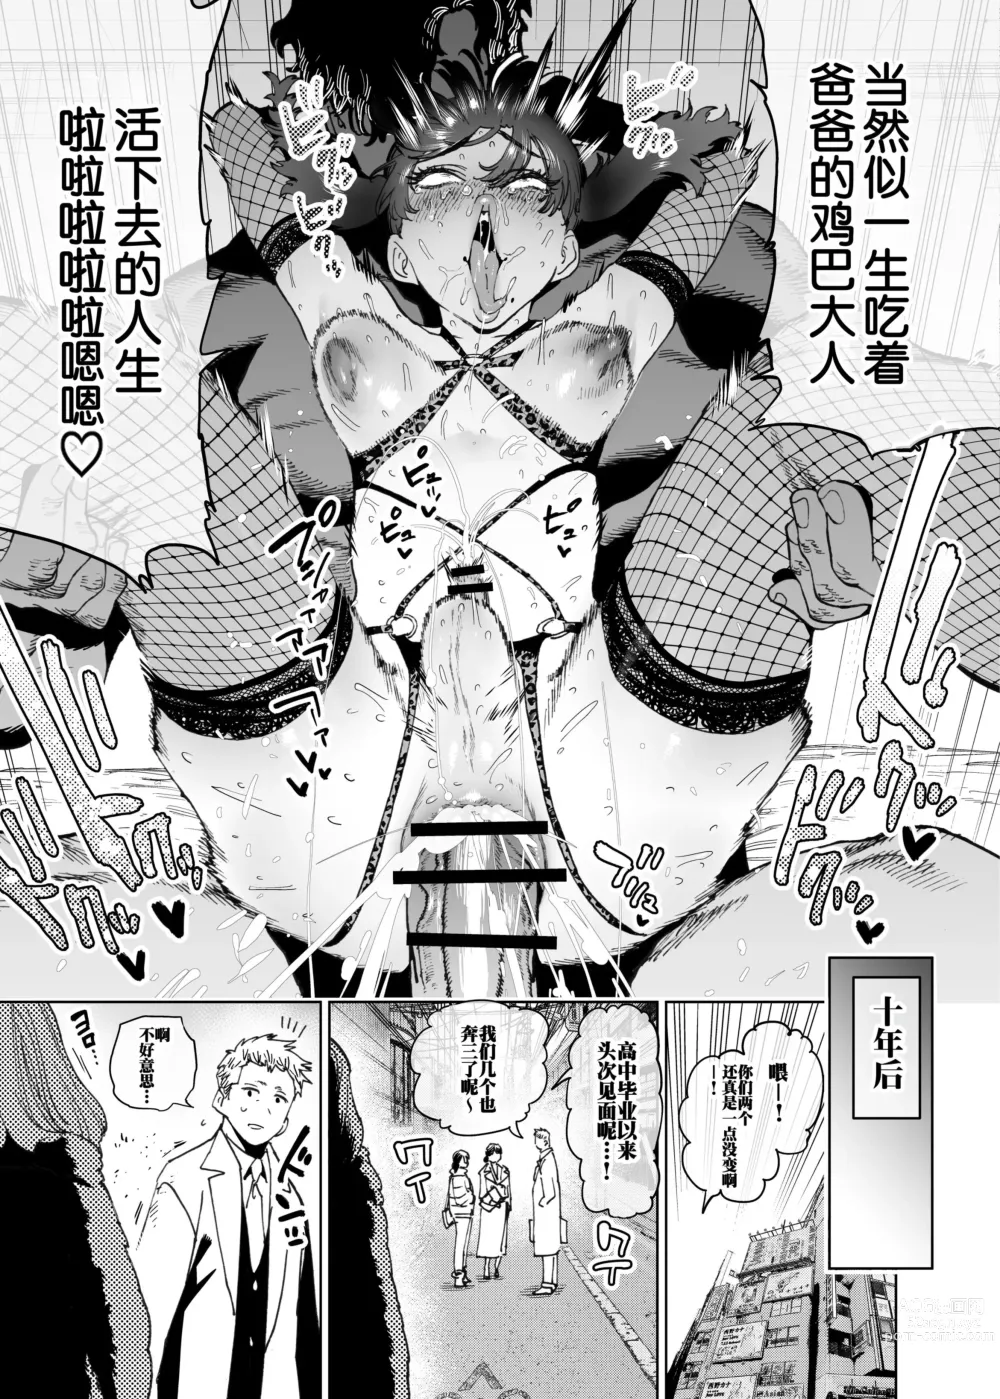 Page 15 of doujinshi 大家也来向狮子堂君的未来规划学习吧!